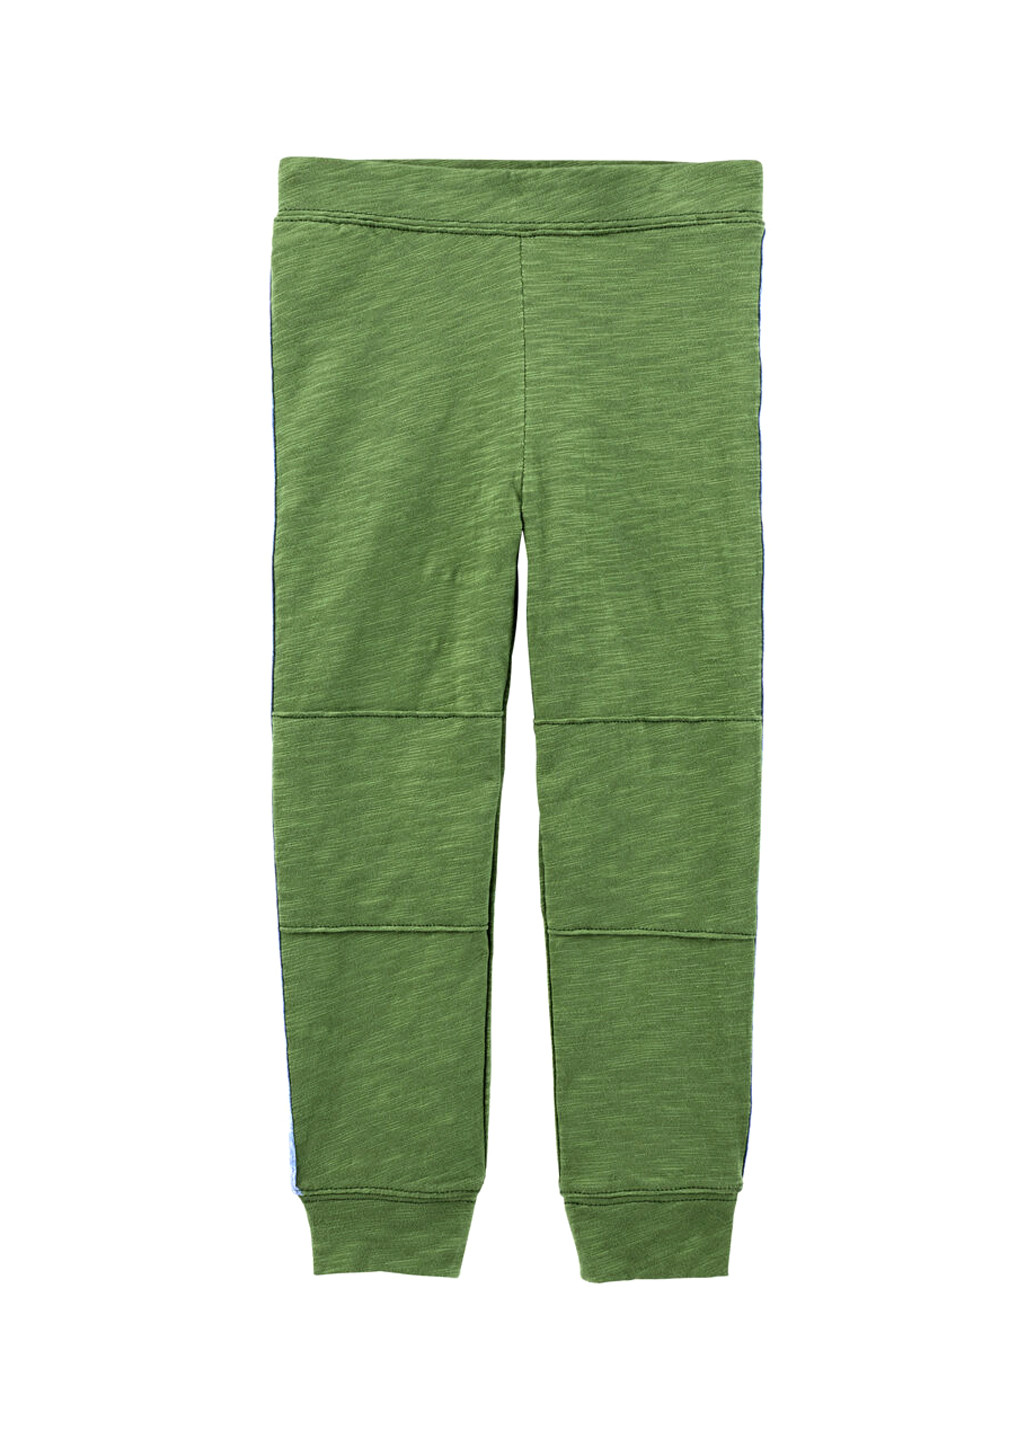 Зеленые спортивные демисезонные брюки джоггеры Carter's